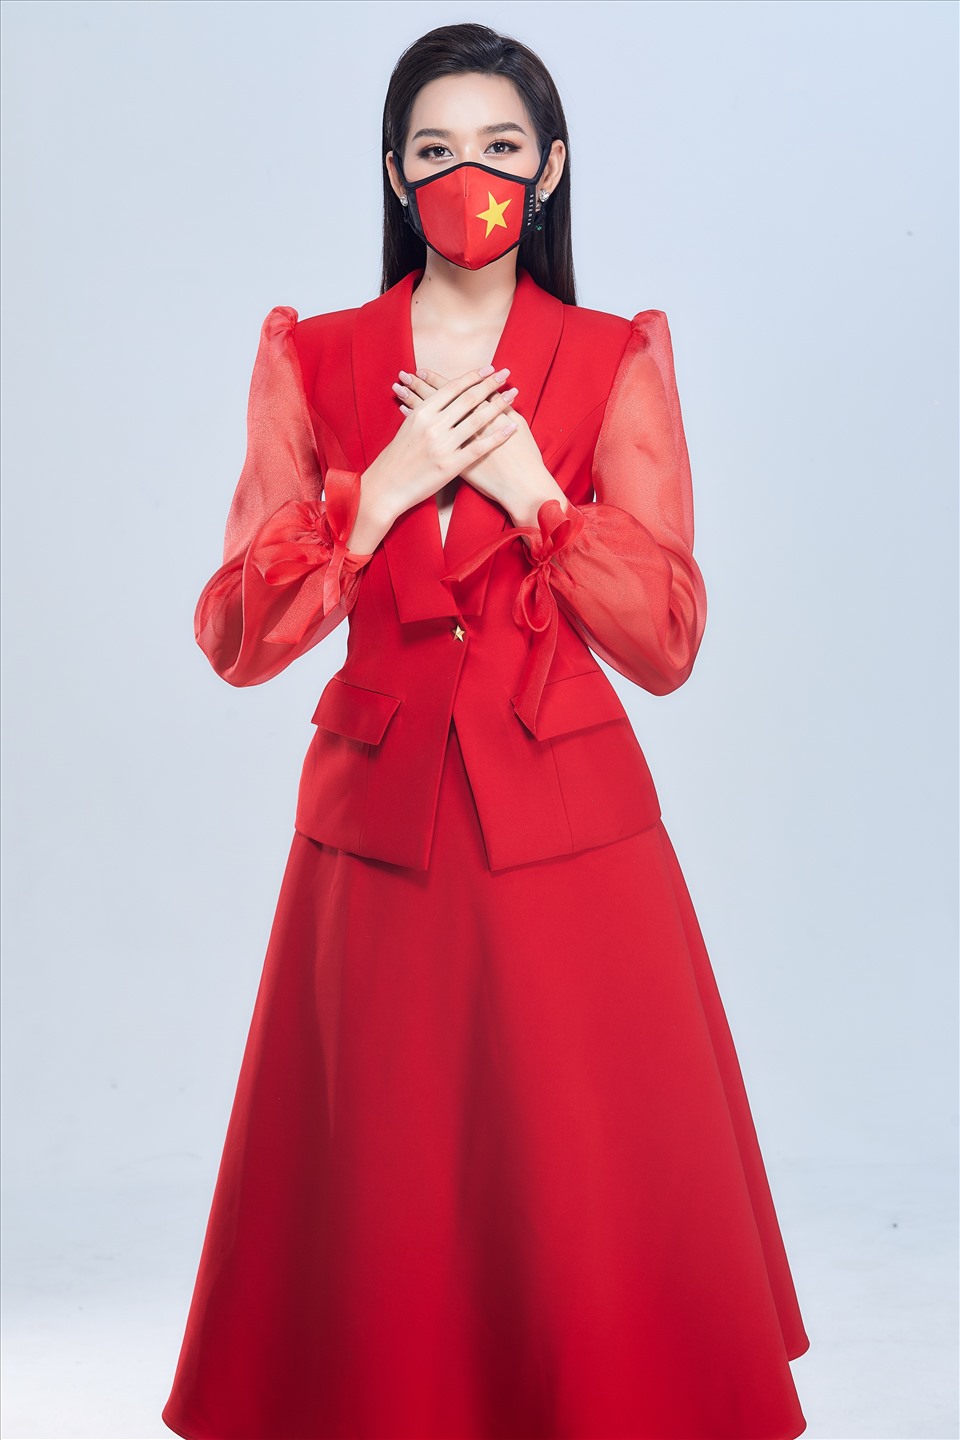 Trang phục được Hoa hậu Việt Nam 2020 lựa chọn để diện khi lên đường mang màu đỏ - được lấy cảm hứng từ lá cờ Việt Nam và cũng là màu sắc may mắn của cô. Ảnh: Sen Vàng.